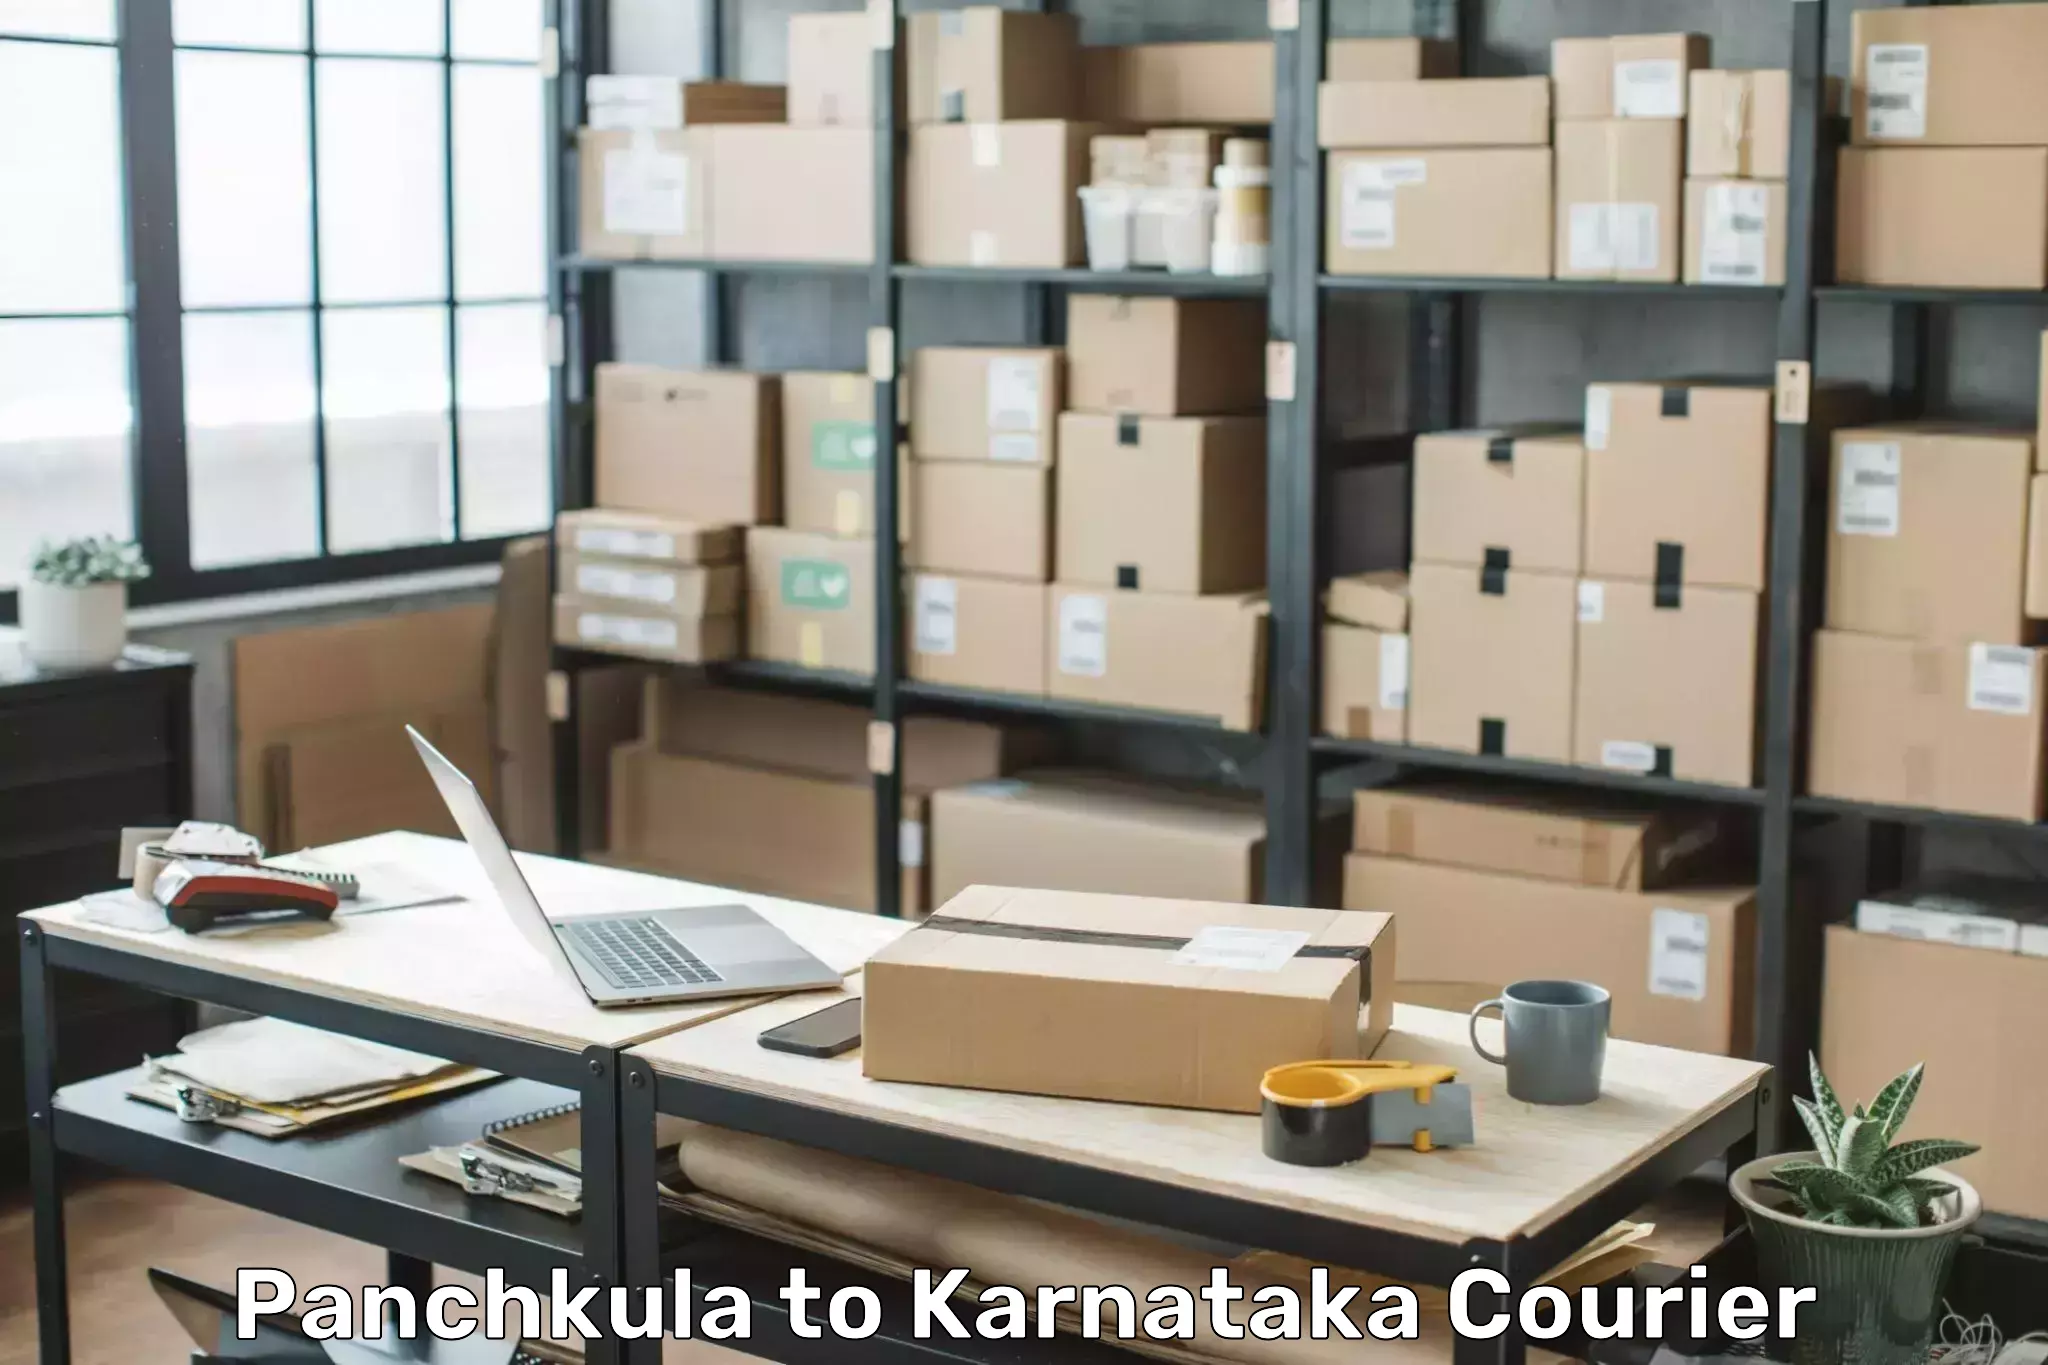 Hassle-free luggage shipping Panchkula to Siruguppa